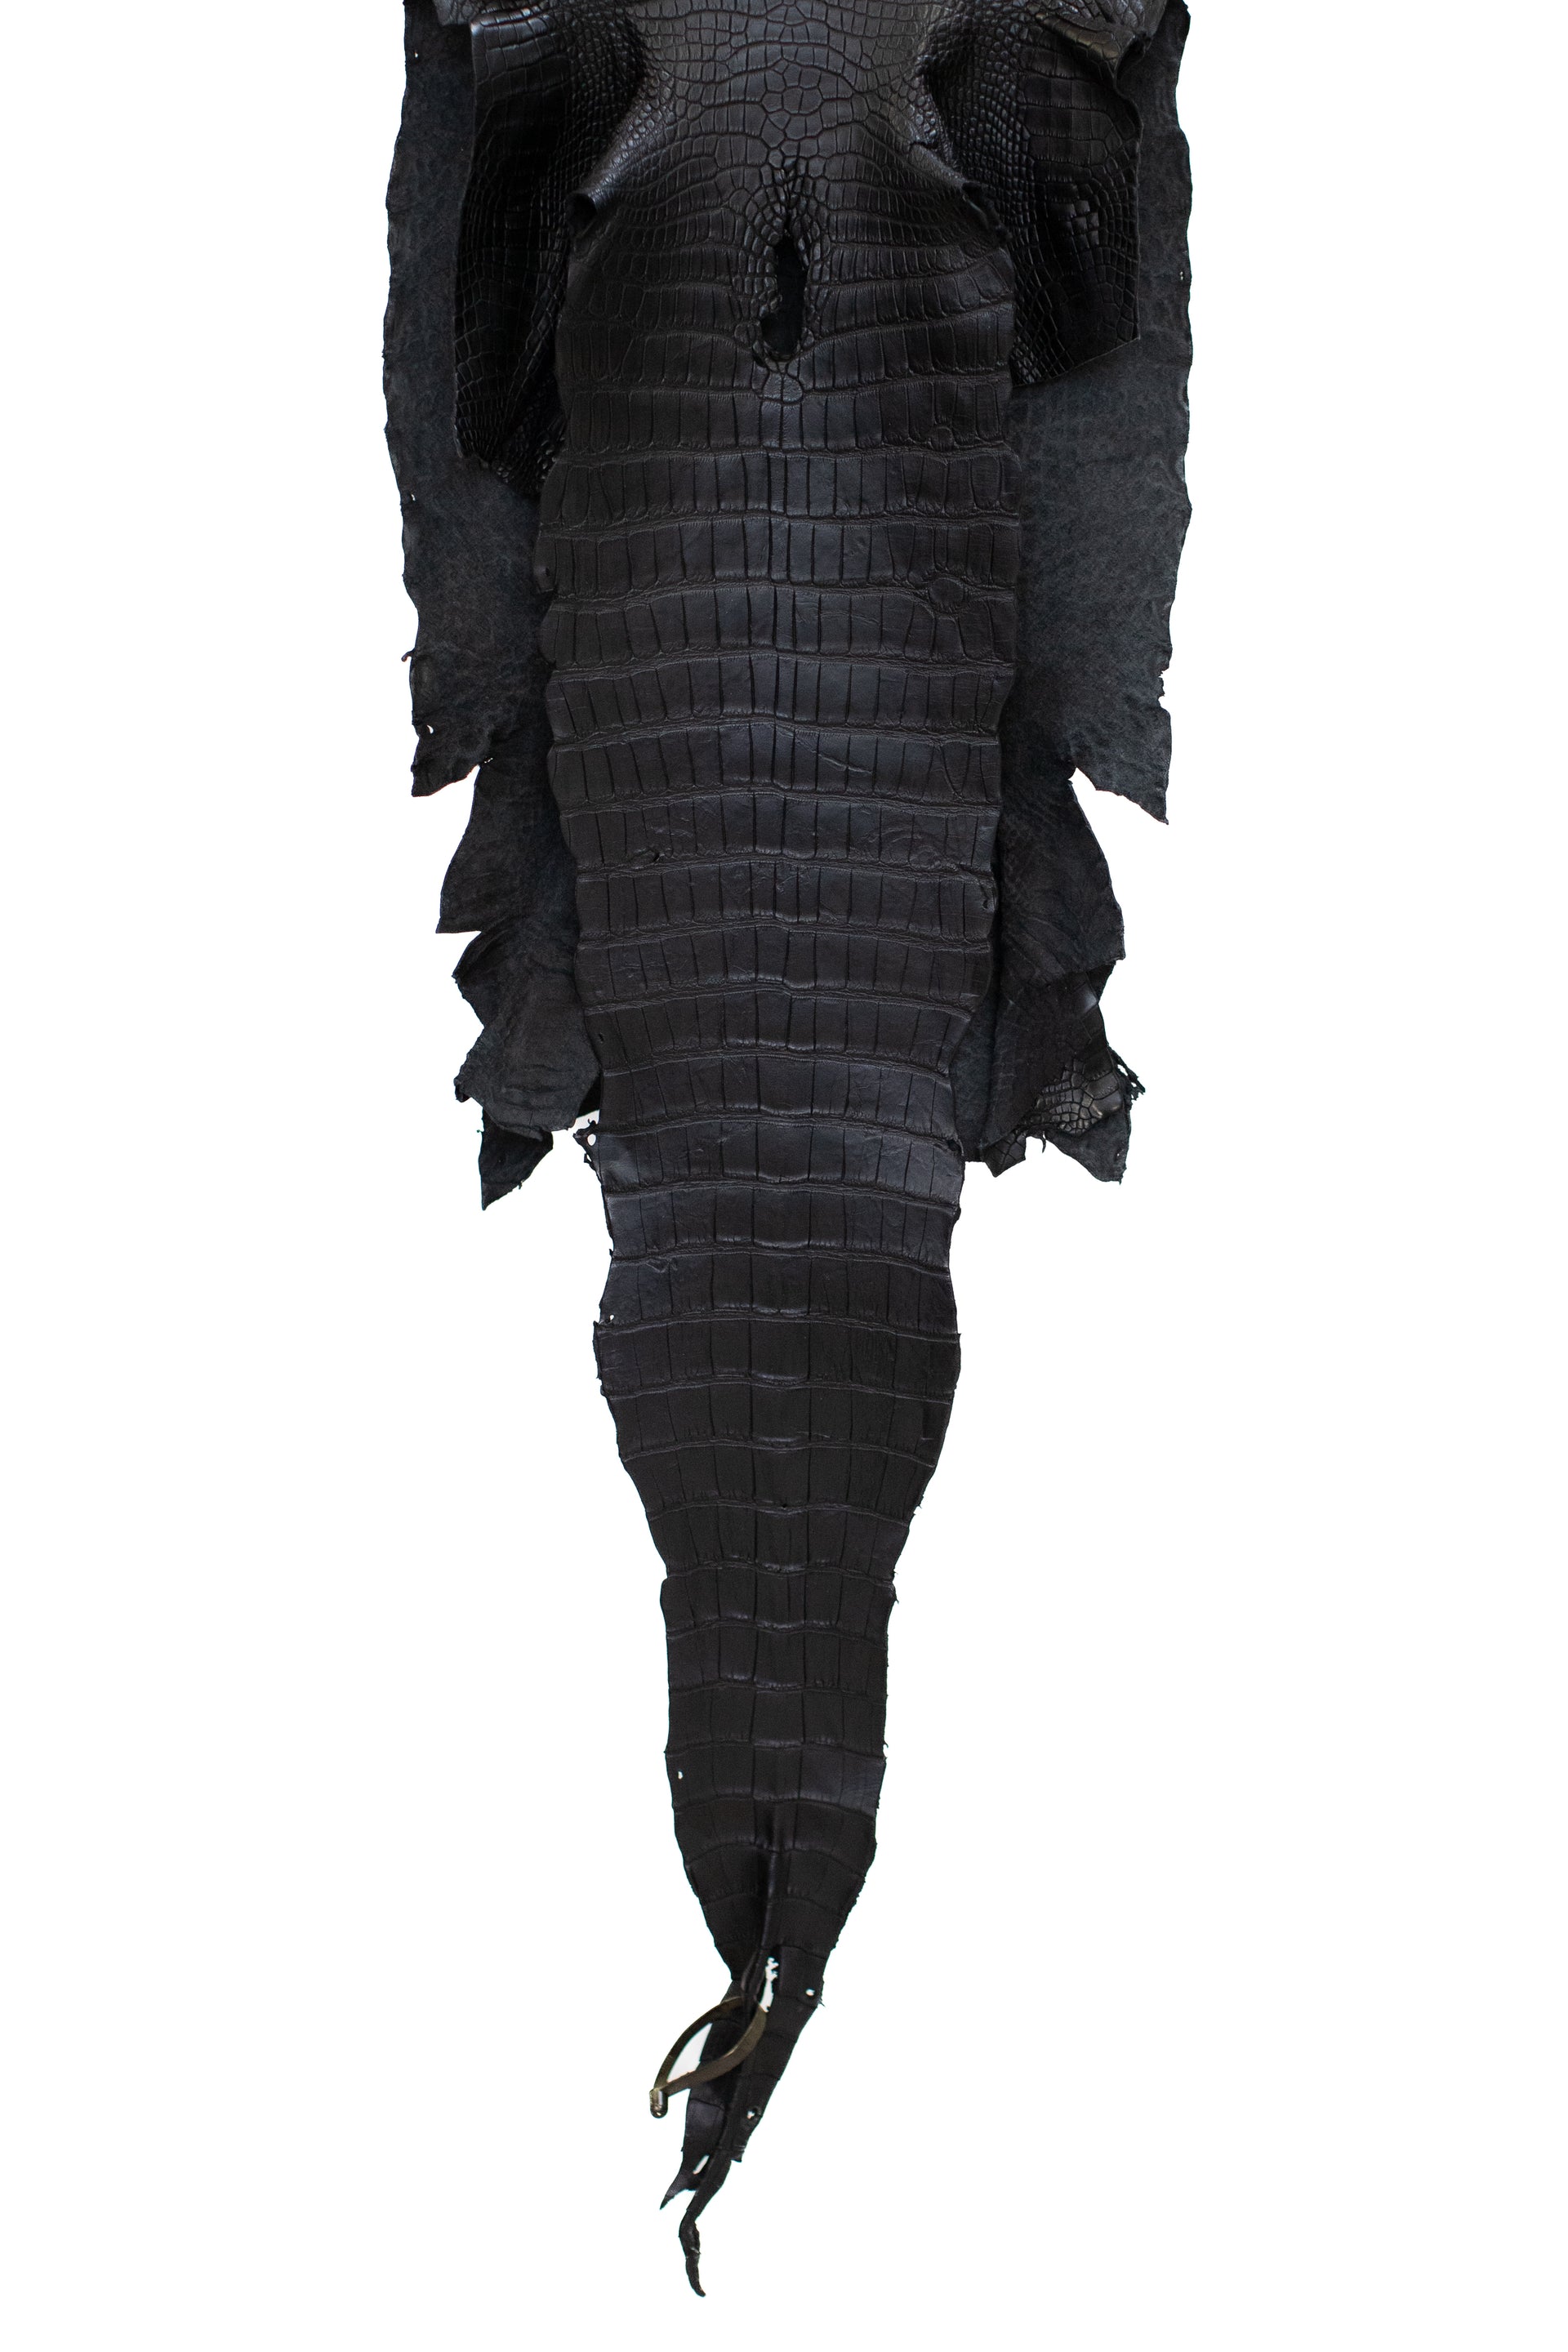 42 cm Grade 1/2 Black Matte Wild American Alligator Leather - Tag: LA16-0033100